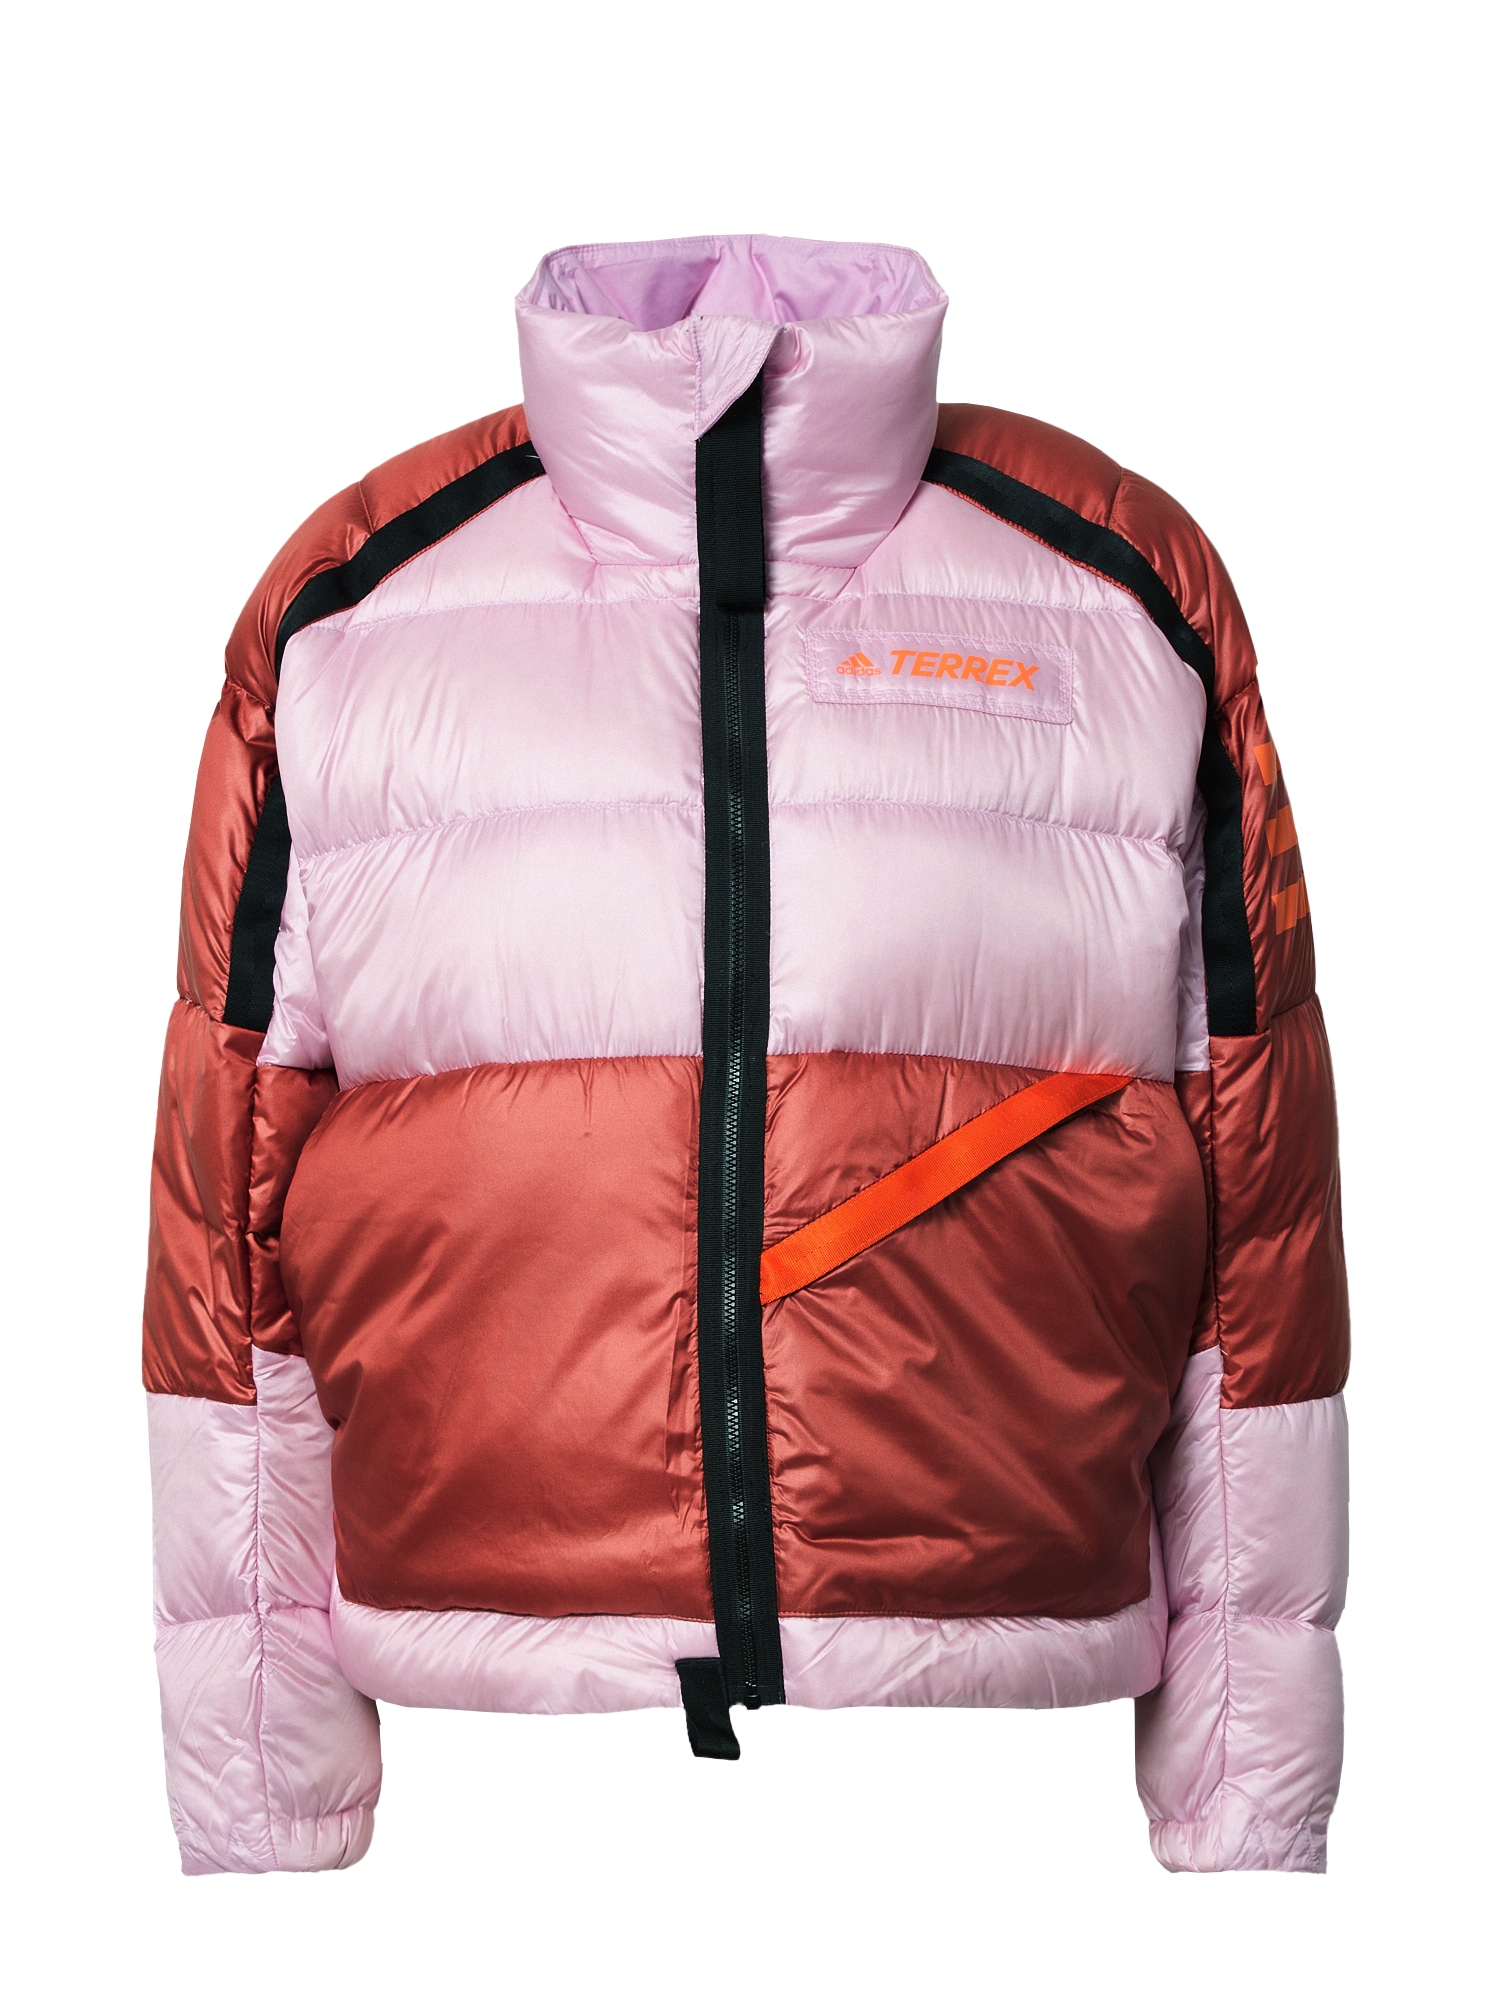 ADIDAS TERREX Zunanja jakna 'Utilitas'  majnica / neonsko oranžna / karminsko rdeča / črna